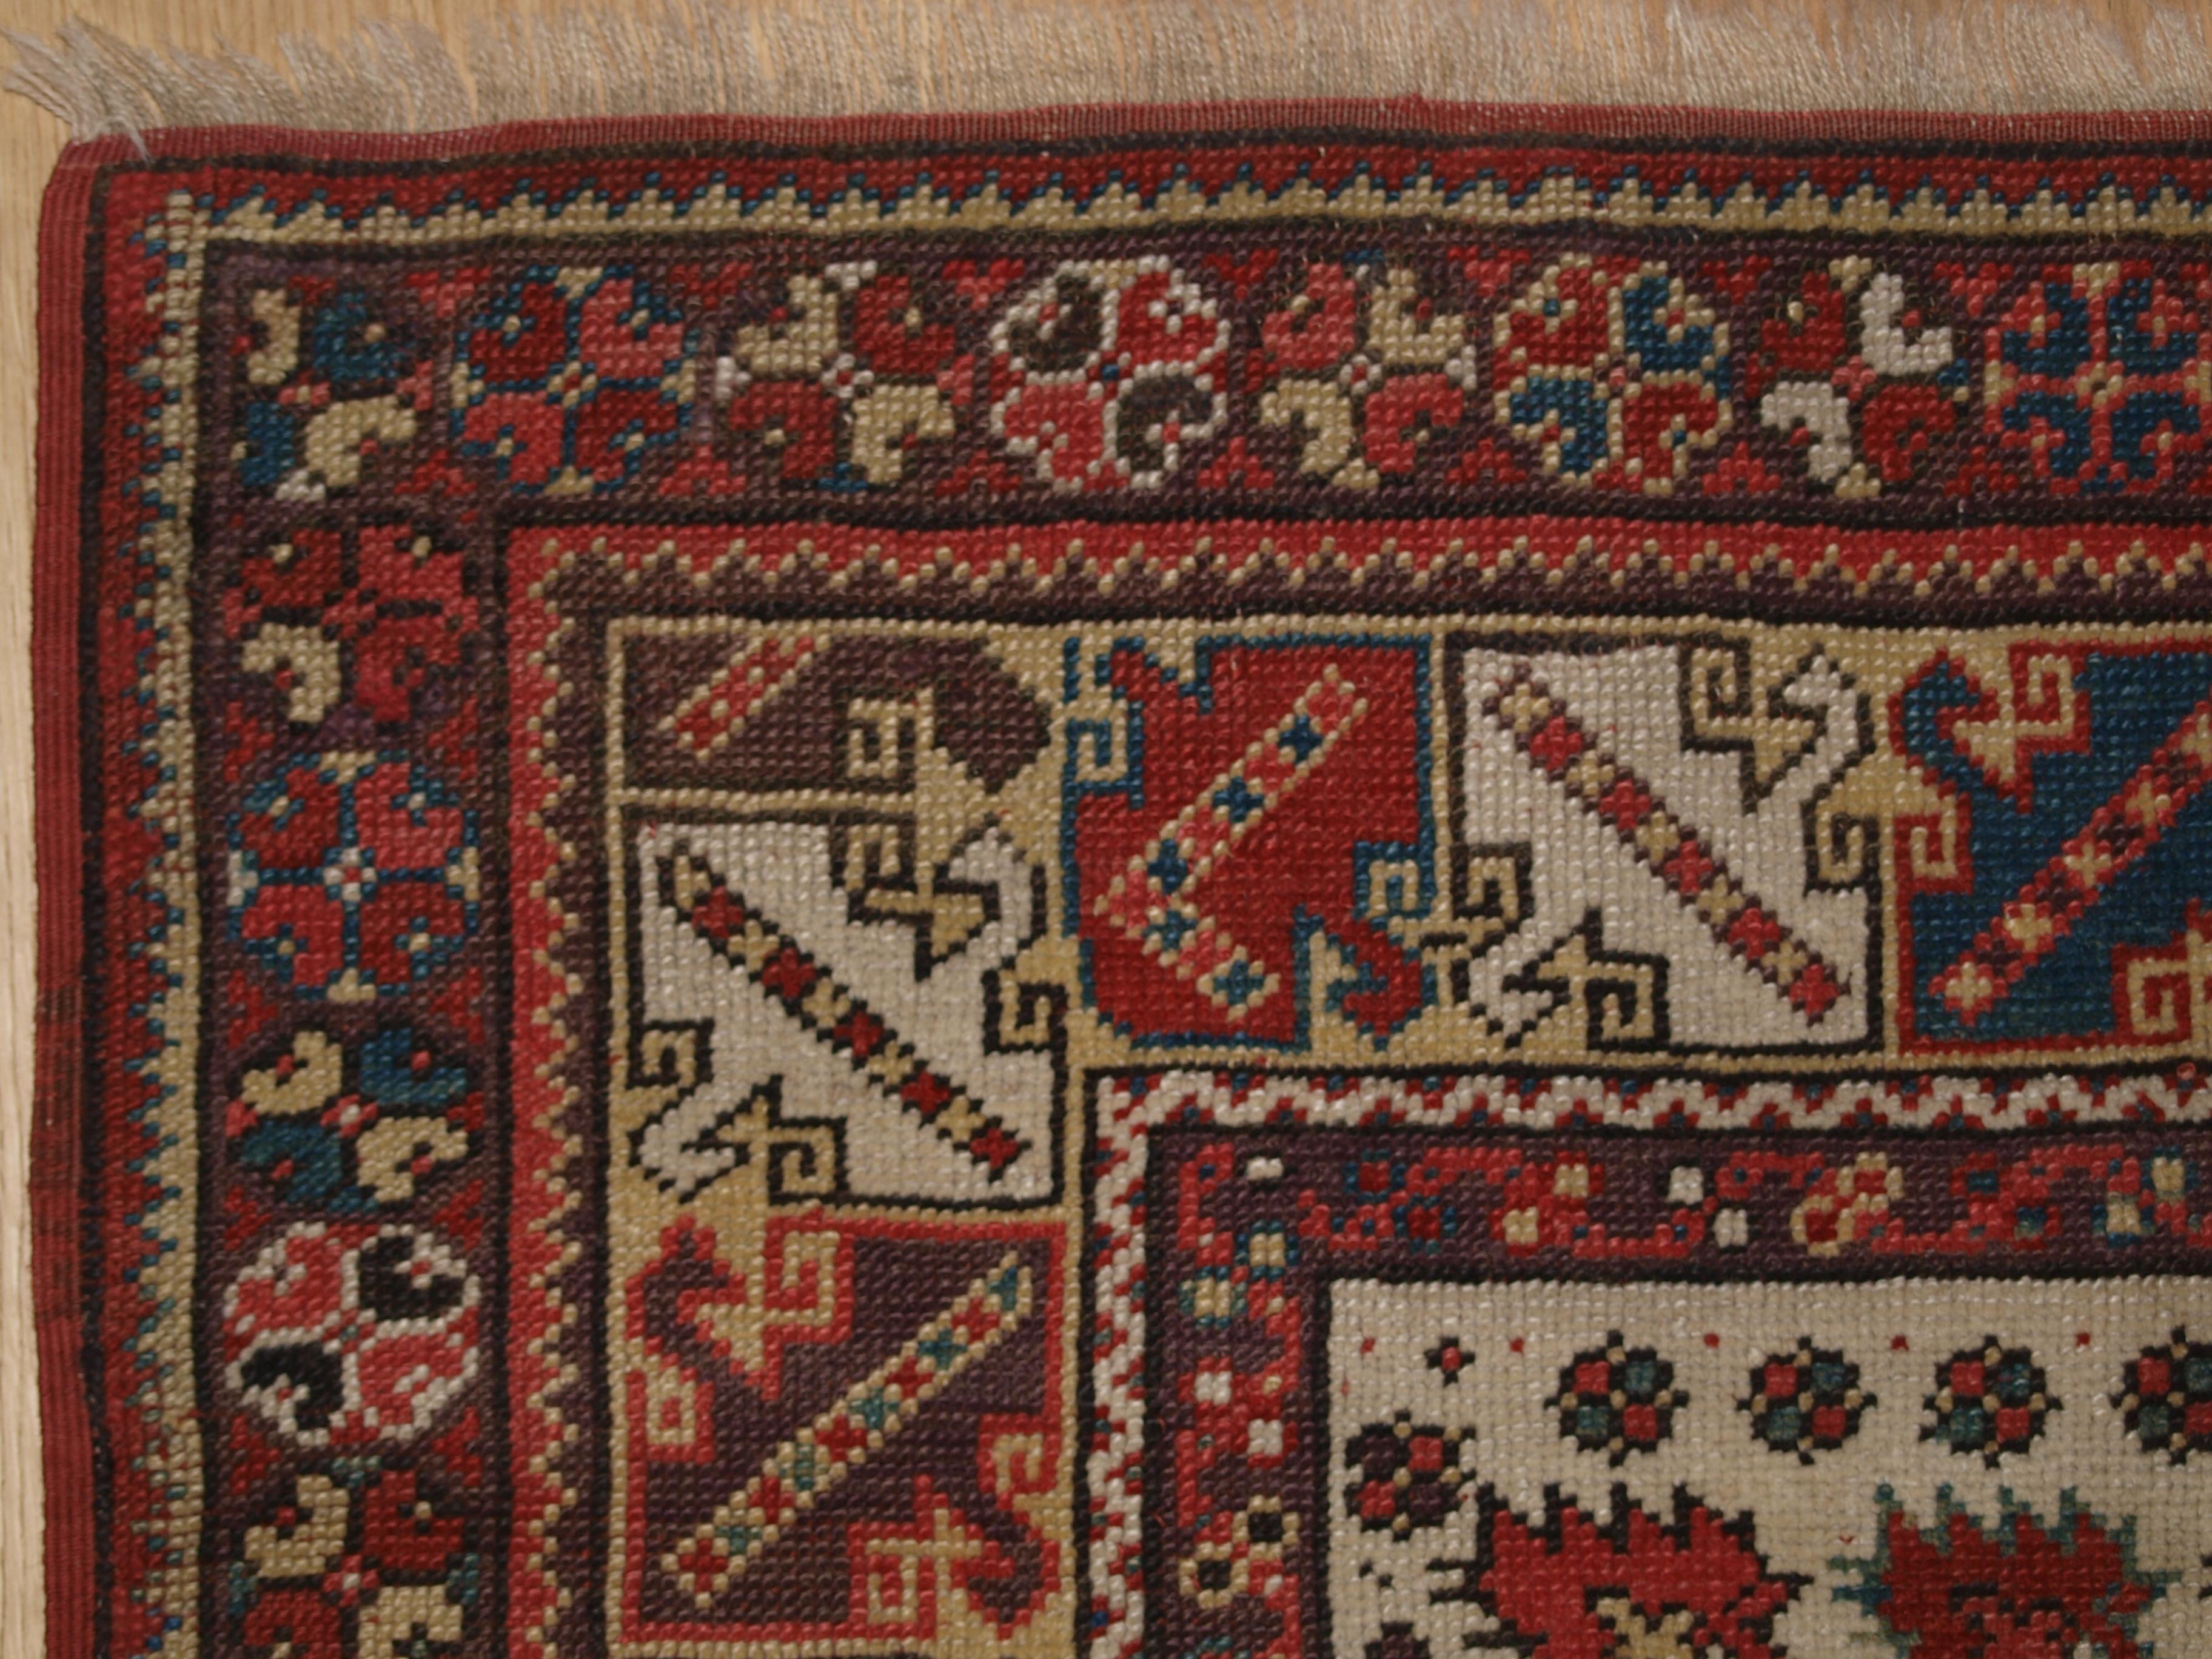 Größe: 129 x 91 cm (4ft 3in x 3ft 0in).

Antiker türkischer Milas Gebetsteppich in klassischem Design mit herrlich weicher Wolle und kleiner Größe.

2. Hälfte 19. Jahrhundert.

Der Teppich hat sehr weiche Wolle und einen sehr lockeren Griff. Der